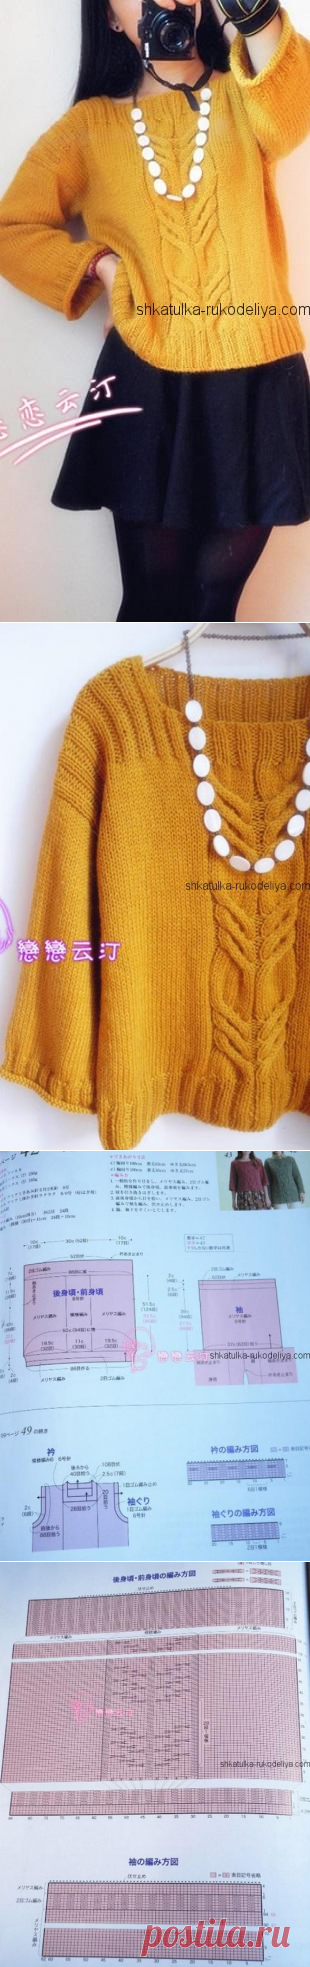 Желтый пуловер спицами. Пуловер с ажурным узором спицами | Шкатулка рукоделия. Сайт для рукодельниц.